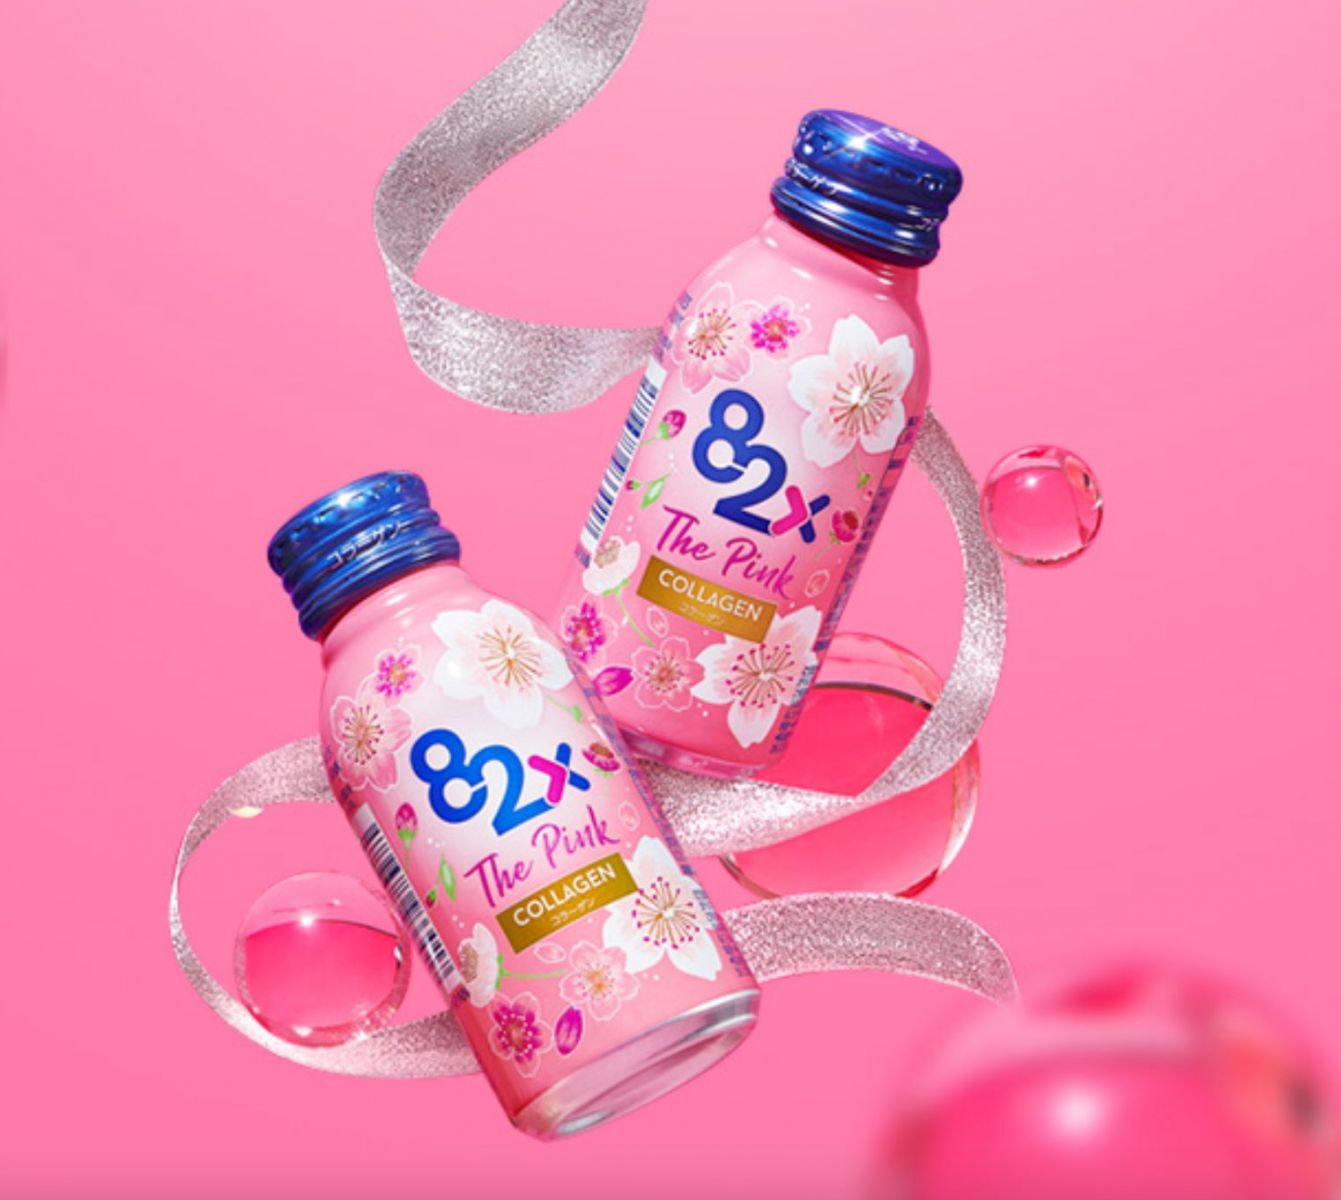 nước uống collagen 82x the pink bí quyết dưỡng nhan của phụ nữ nhật